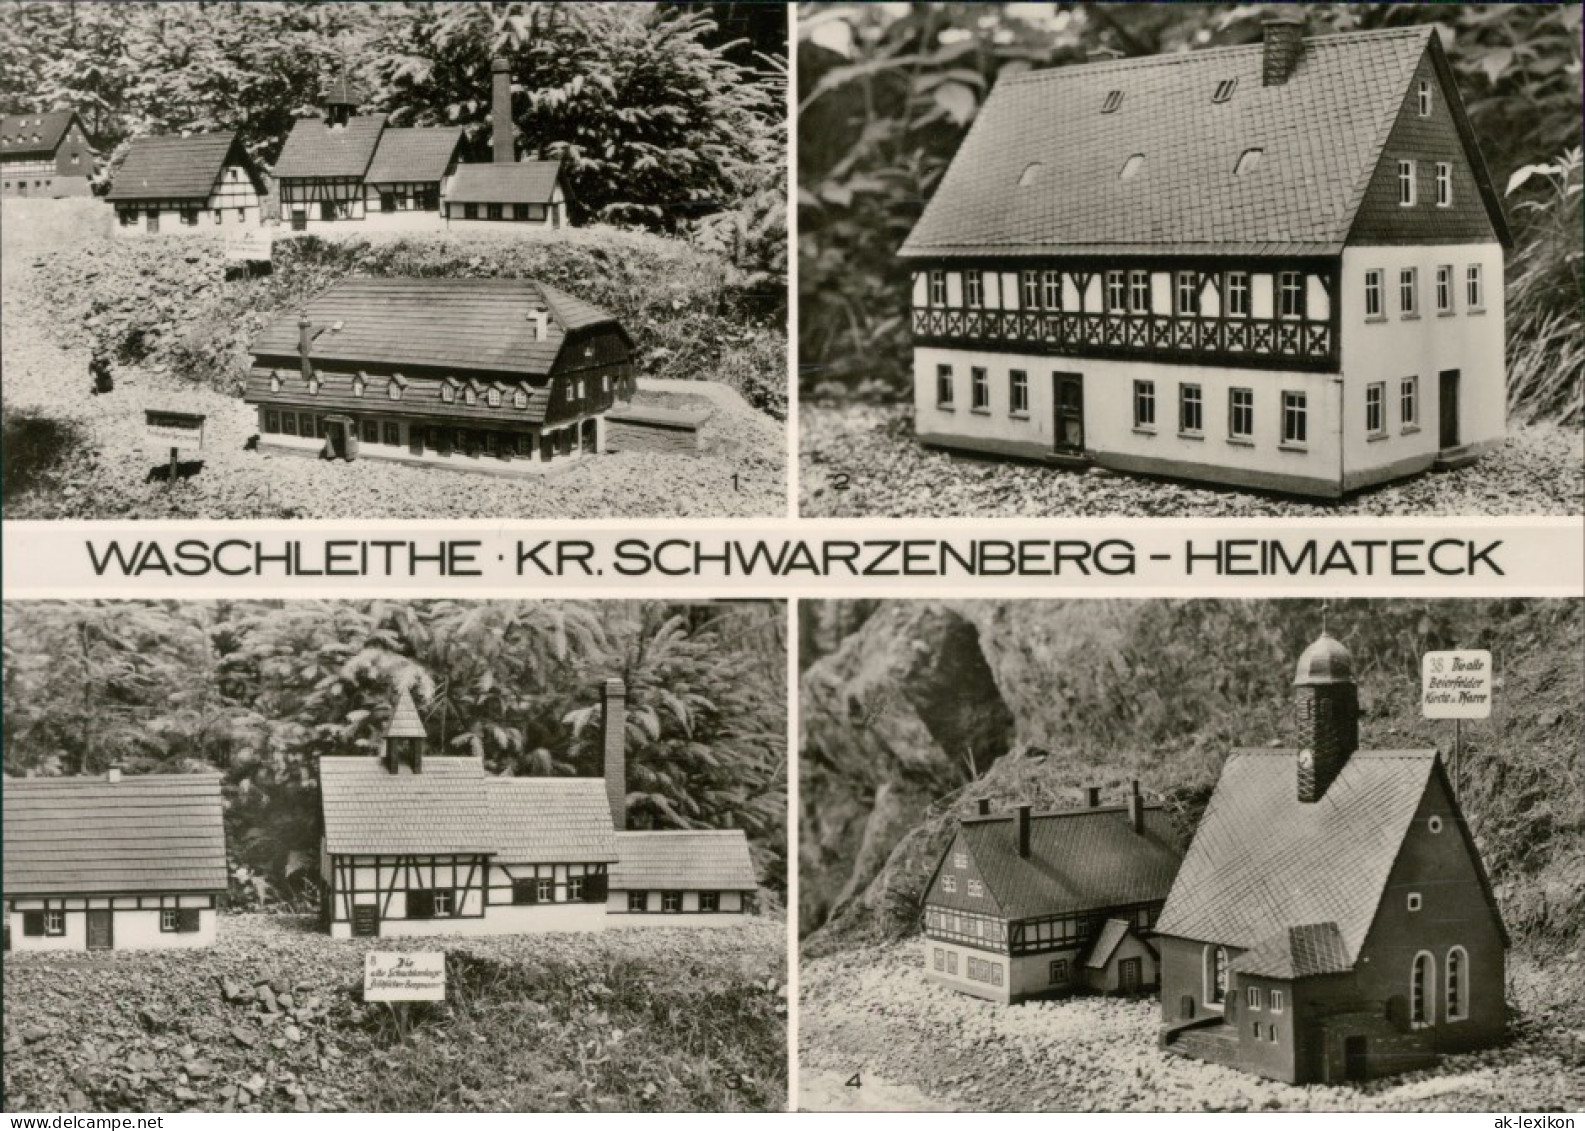 Waschleithe-Grünhain-Beierfeld Miniaturschauanlage Heimatecke 1978 - Gruenhain